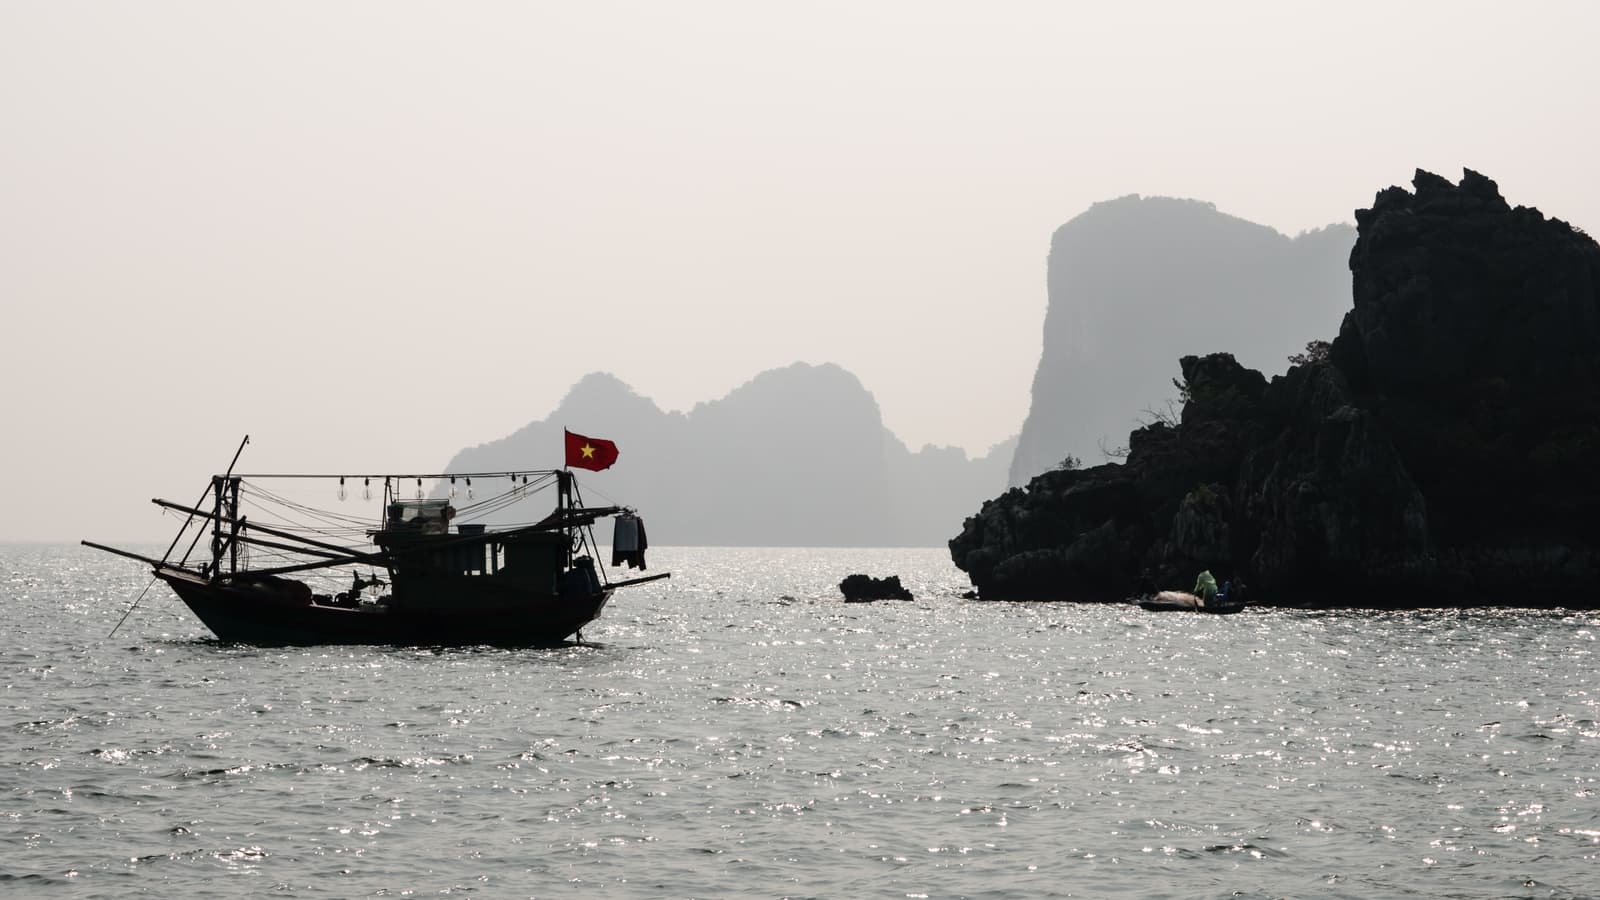 Hạ Long Bay, Quảng Ninh Province, Vietnam